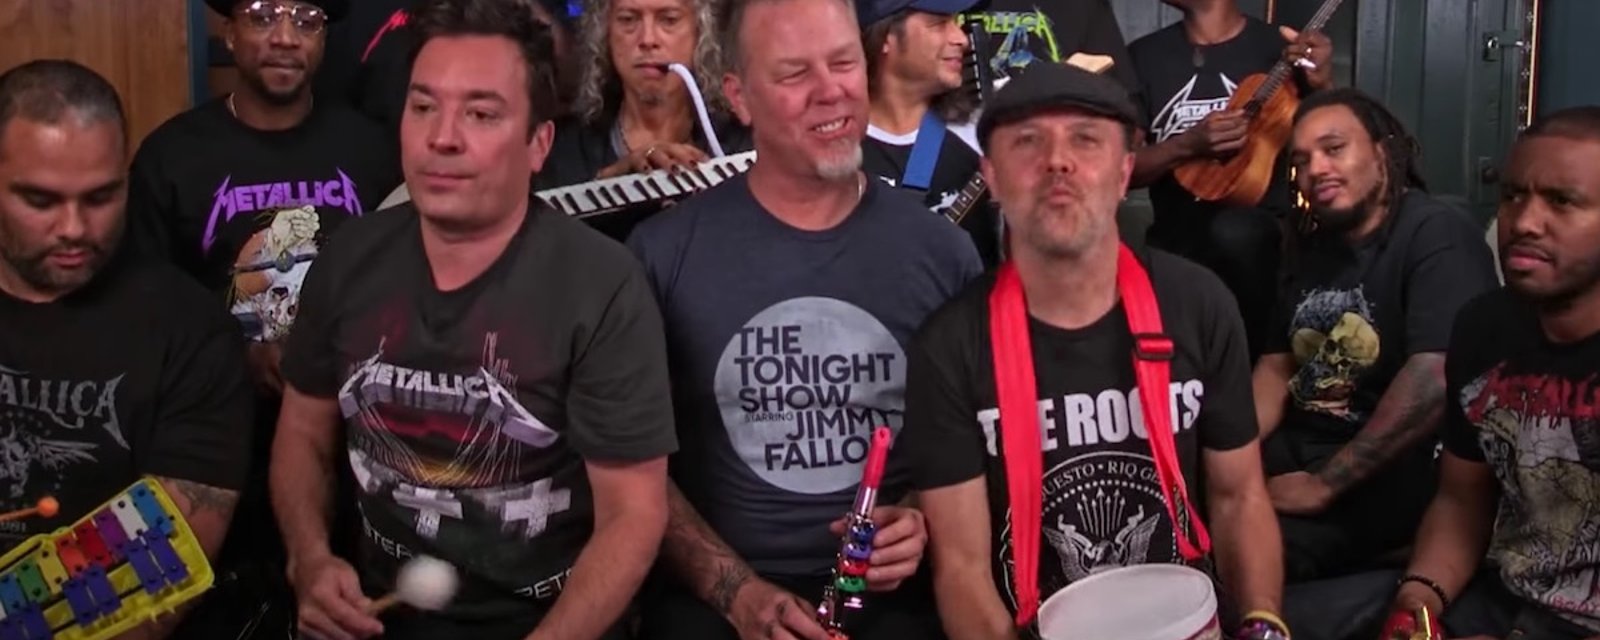 Tous les fans de Metallica vont CAPOTER sur cette vidéo! 